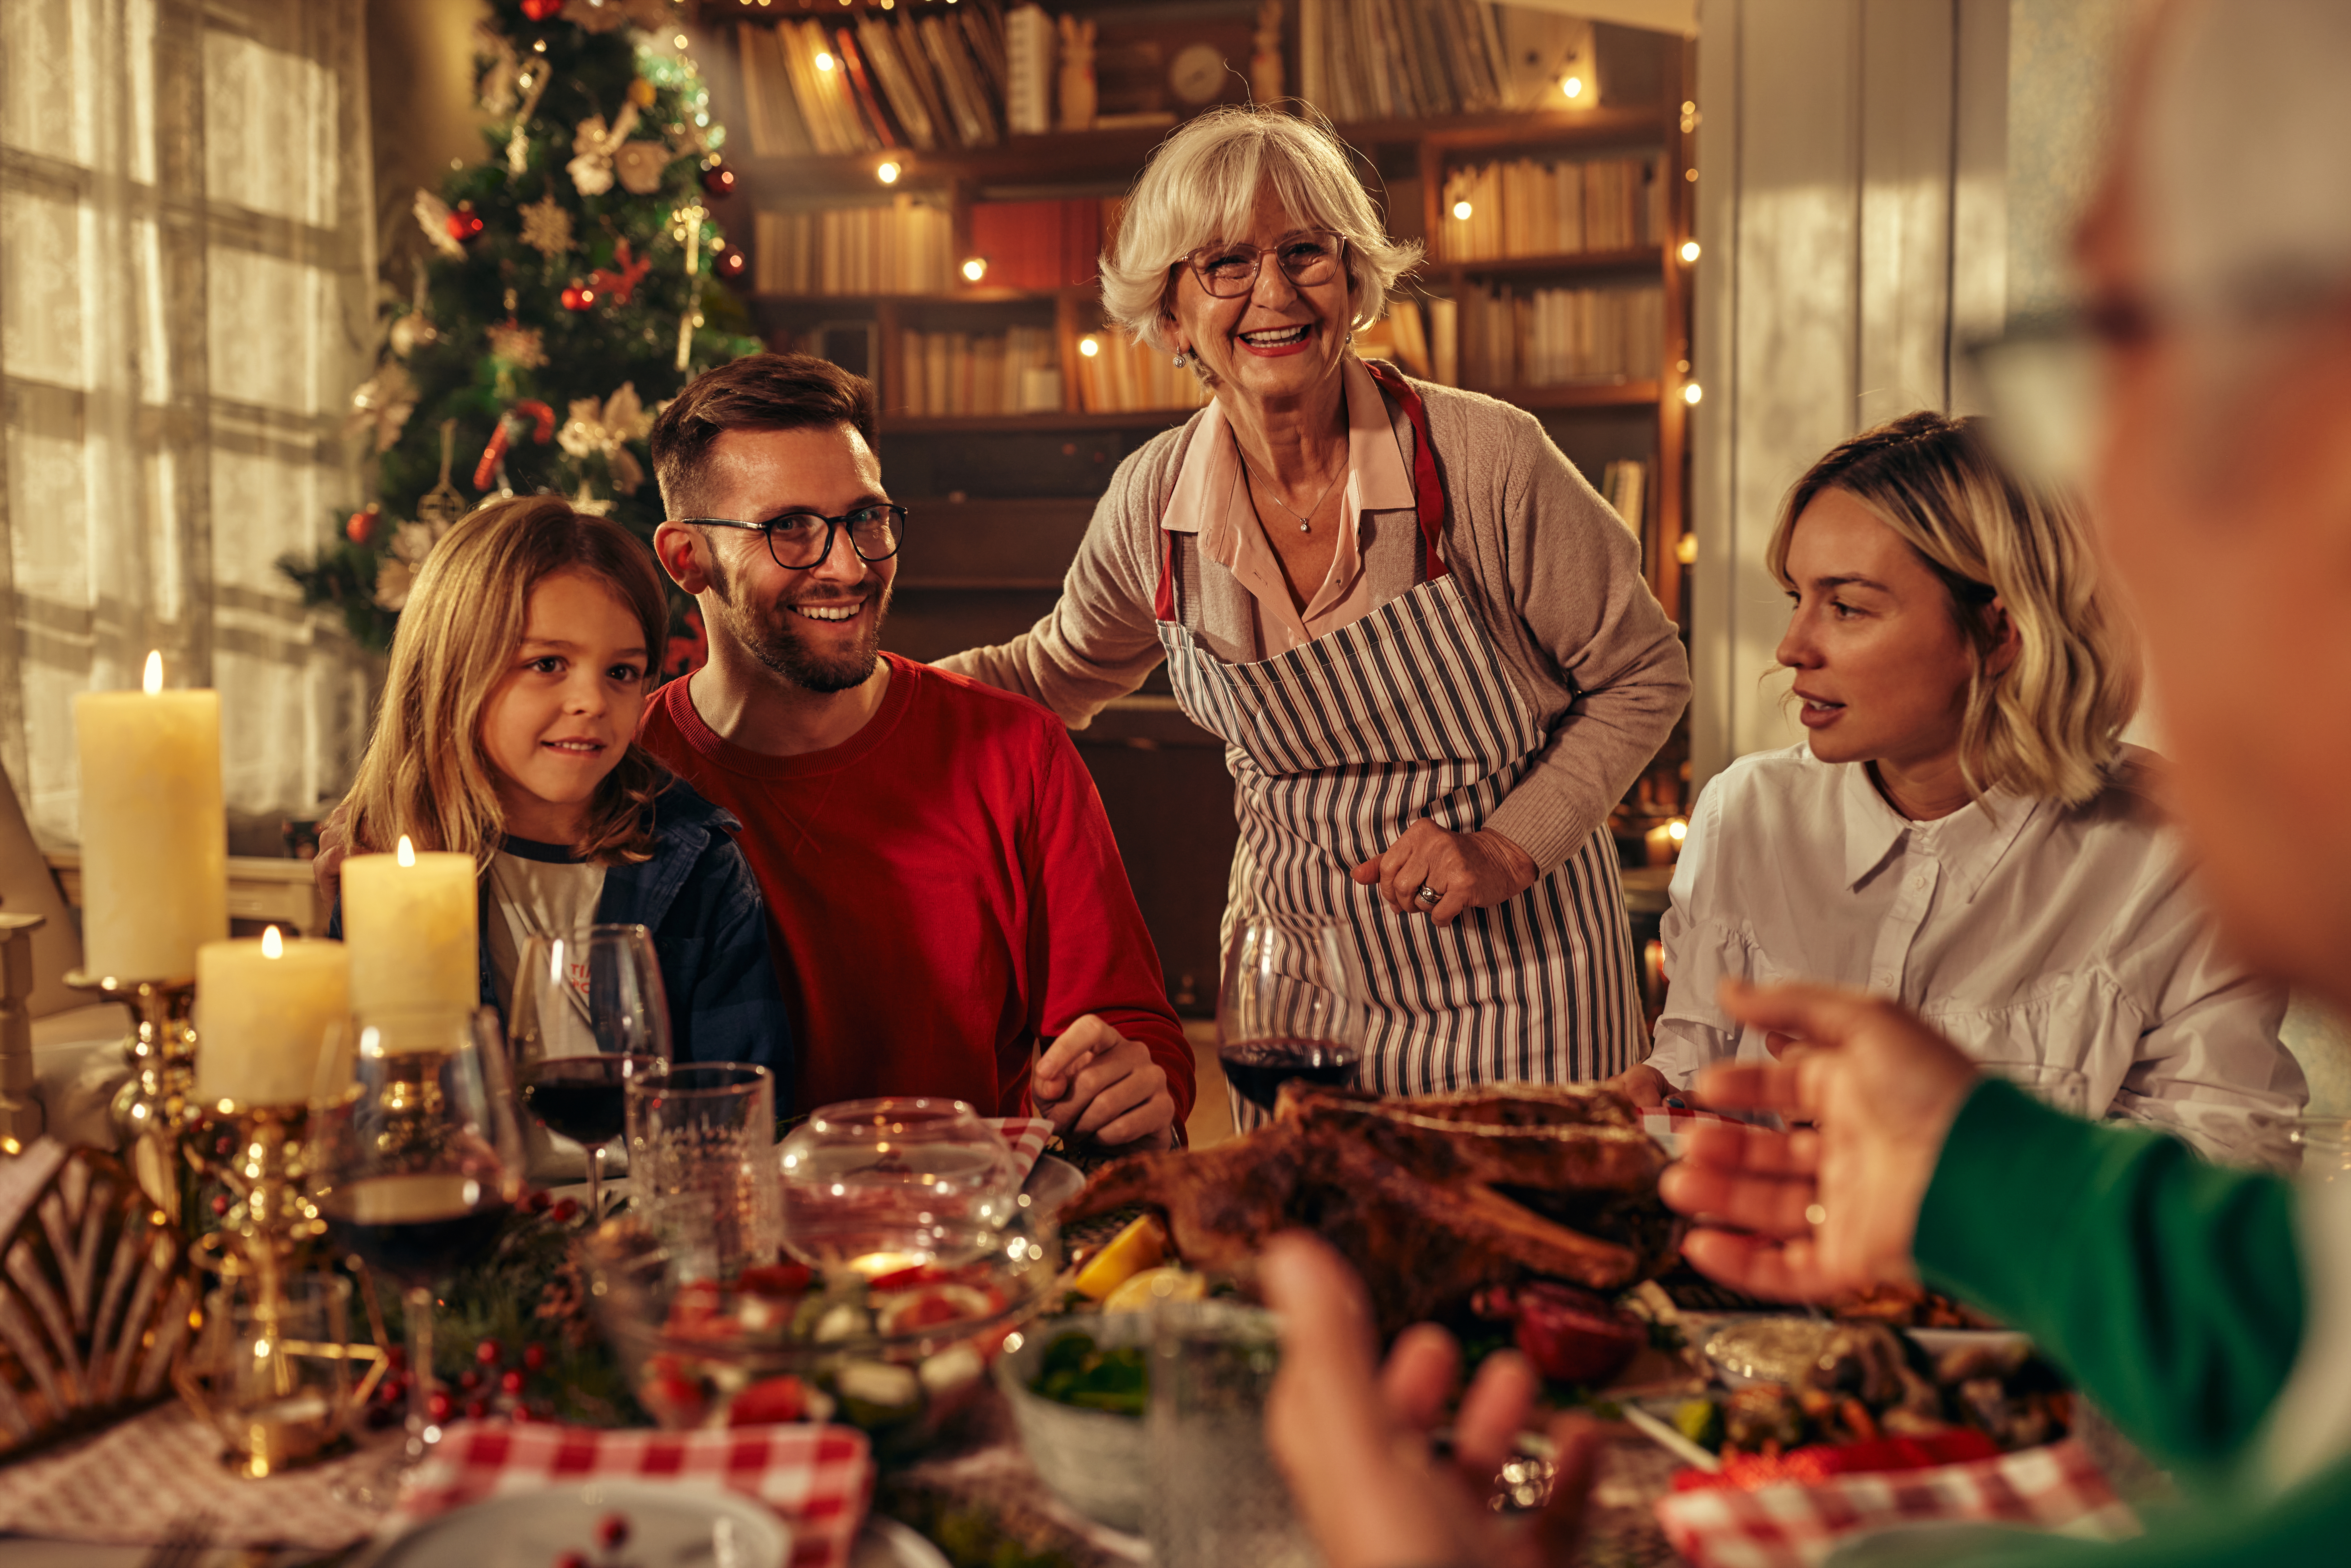 Les membres de la famille se sont réunis pour un souper de Noël | Source : Shutterstock